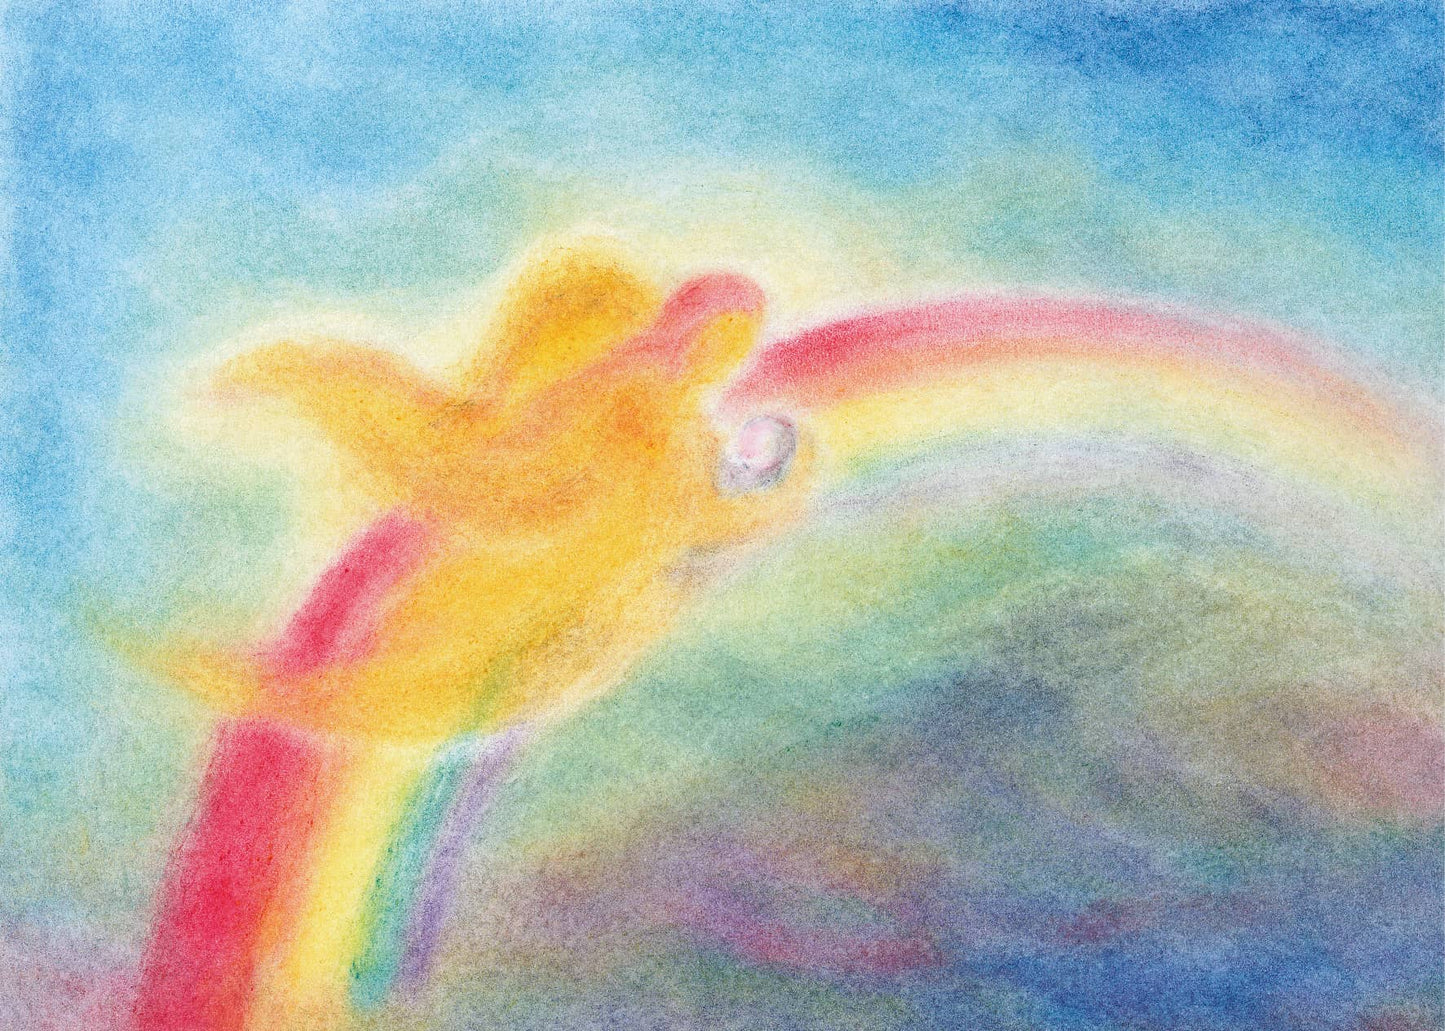 Seccorell-Postkarte "In Liebe getragen" mit einem Schutzengel, der behutsam ein Menschenkind über einen Regenbogen trägt.